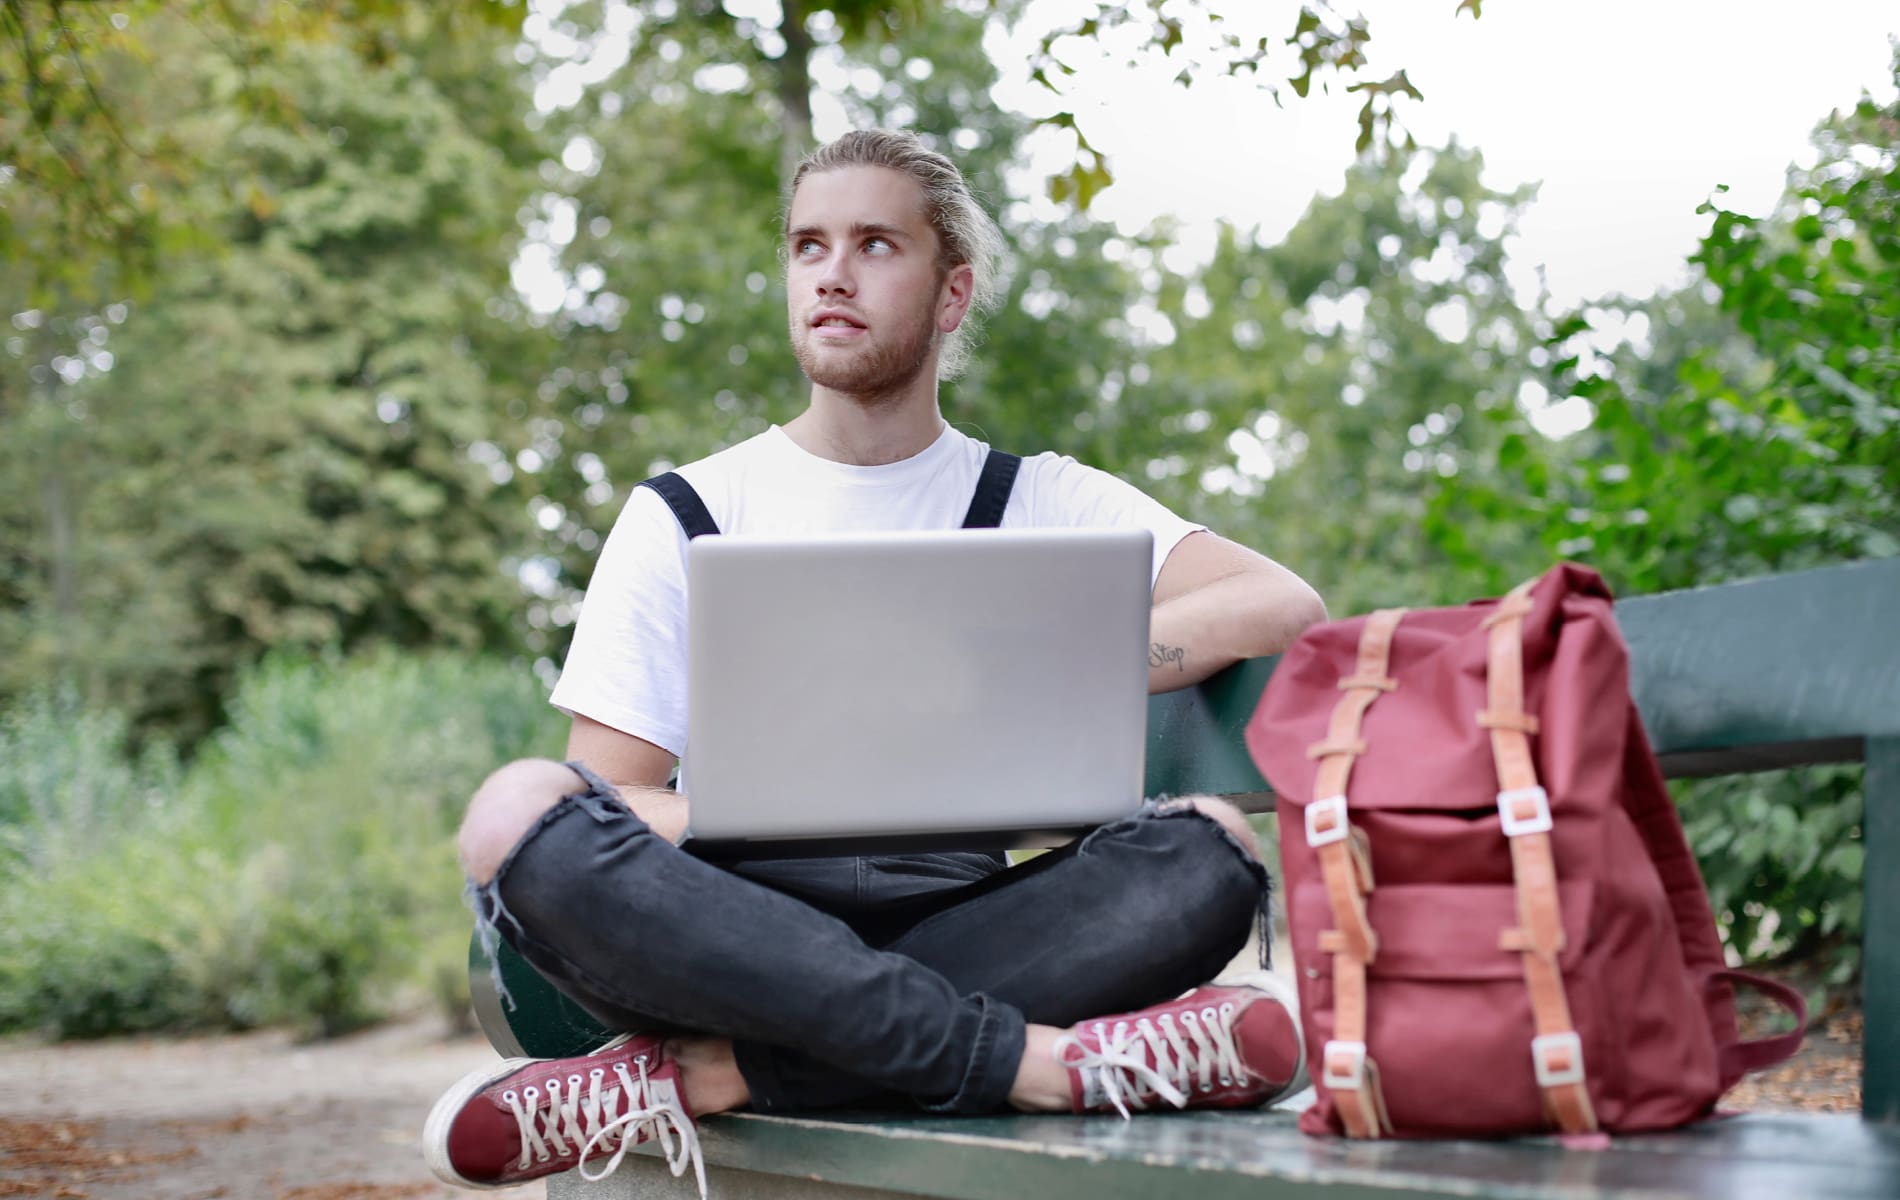 Mann mit Laptop und Rucksack sitzt auf Bank